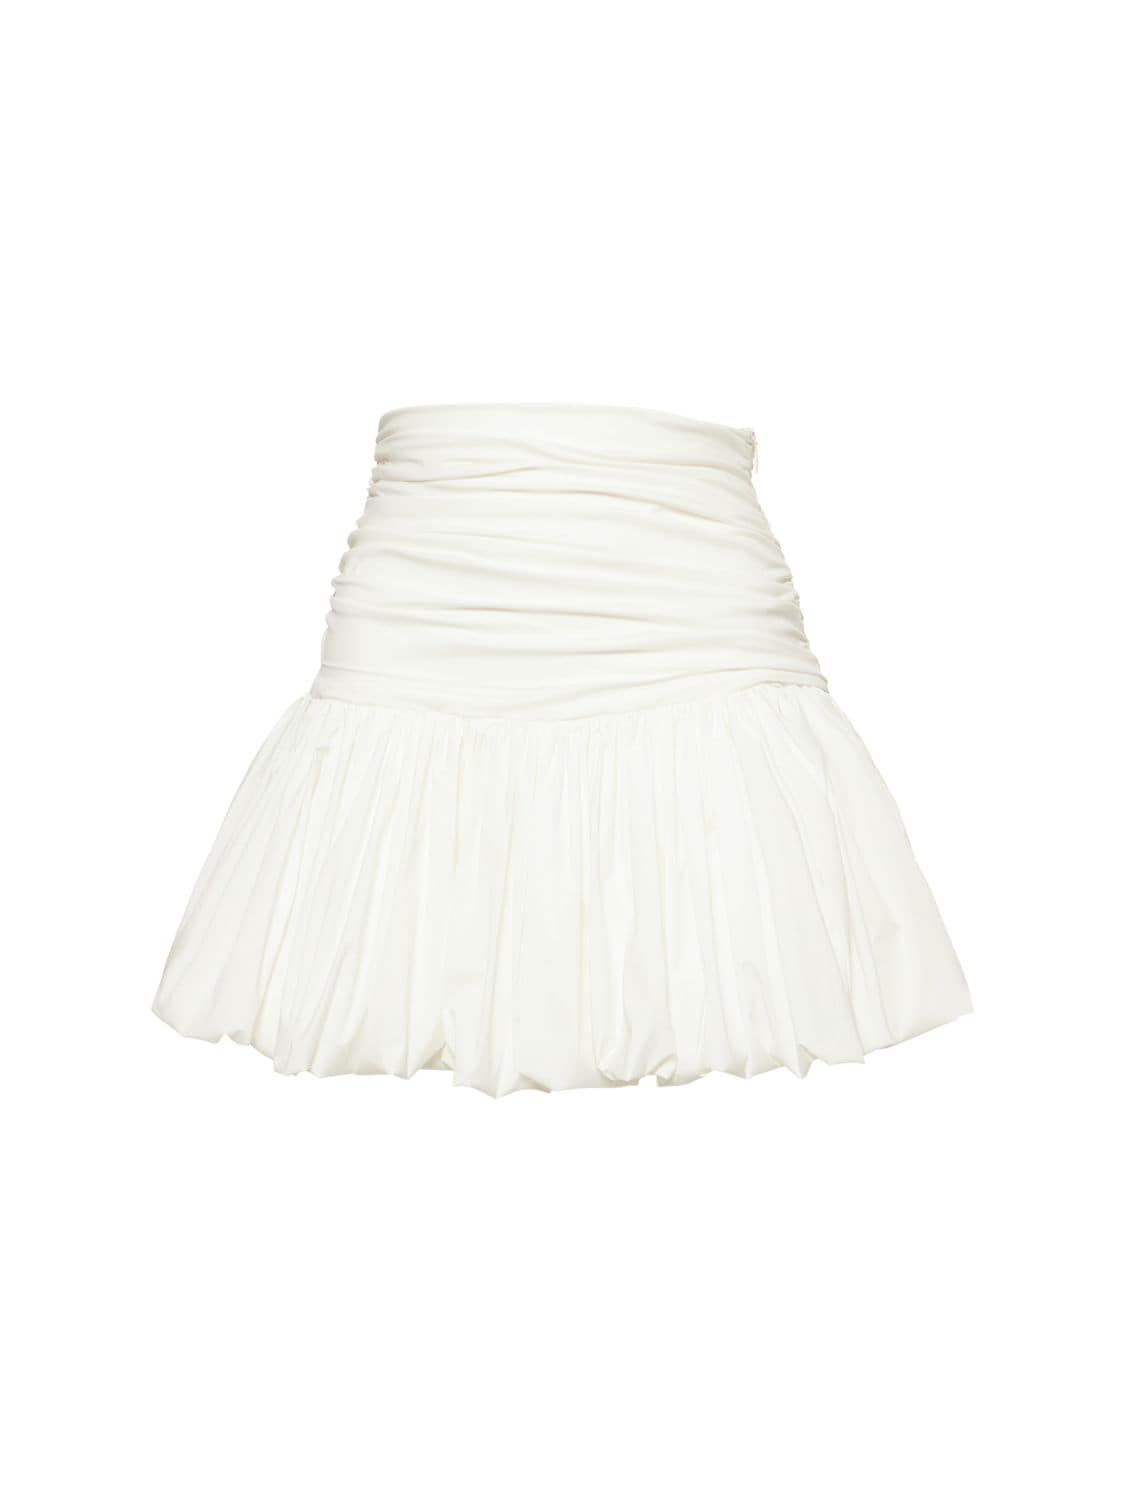 Philosophy Di Lorenzo Serafini Stretch Taffeta Mini Skirt In White